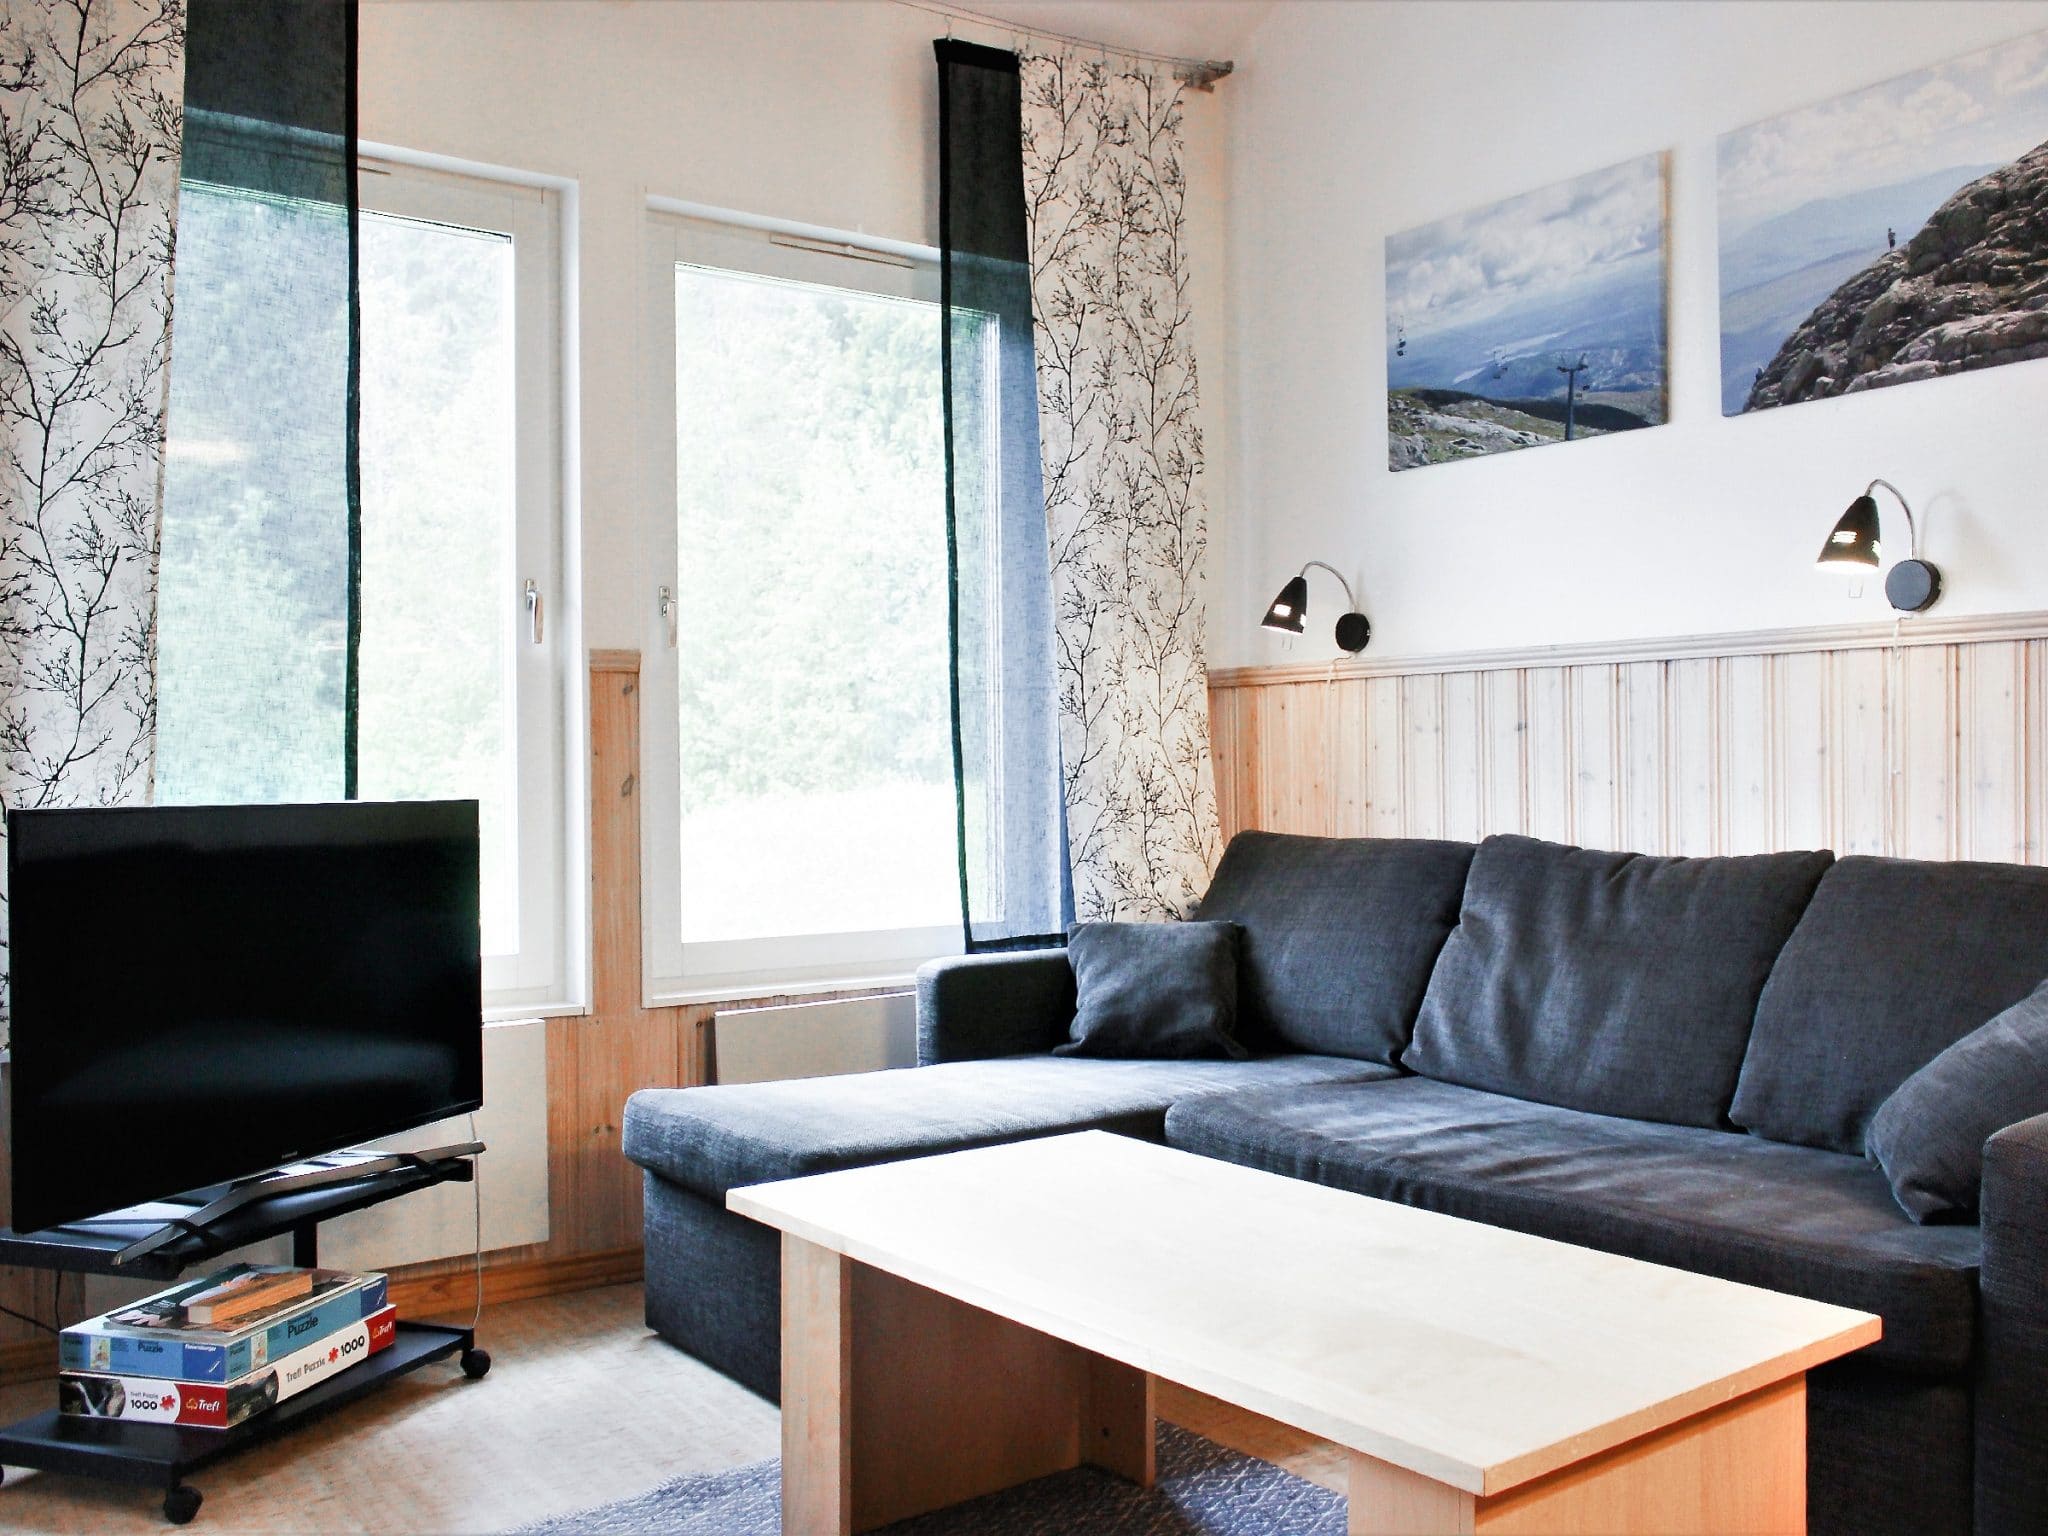 Vardagsrum med TV och soffa i grått tyg